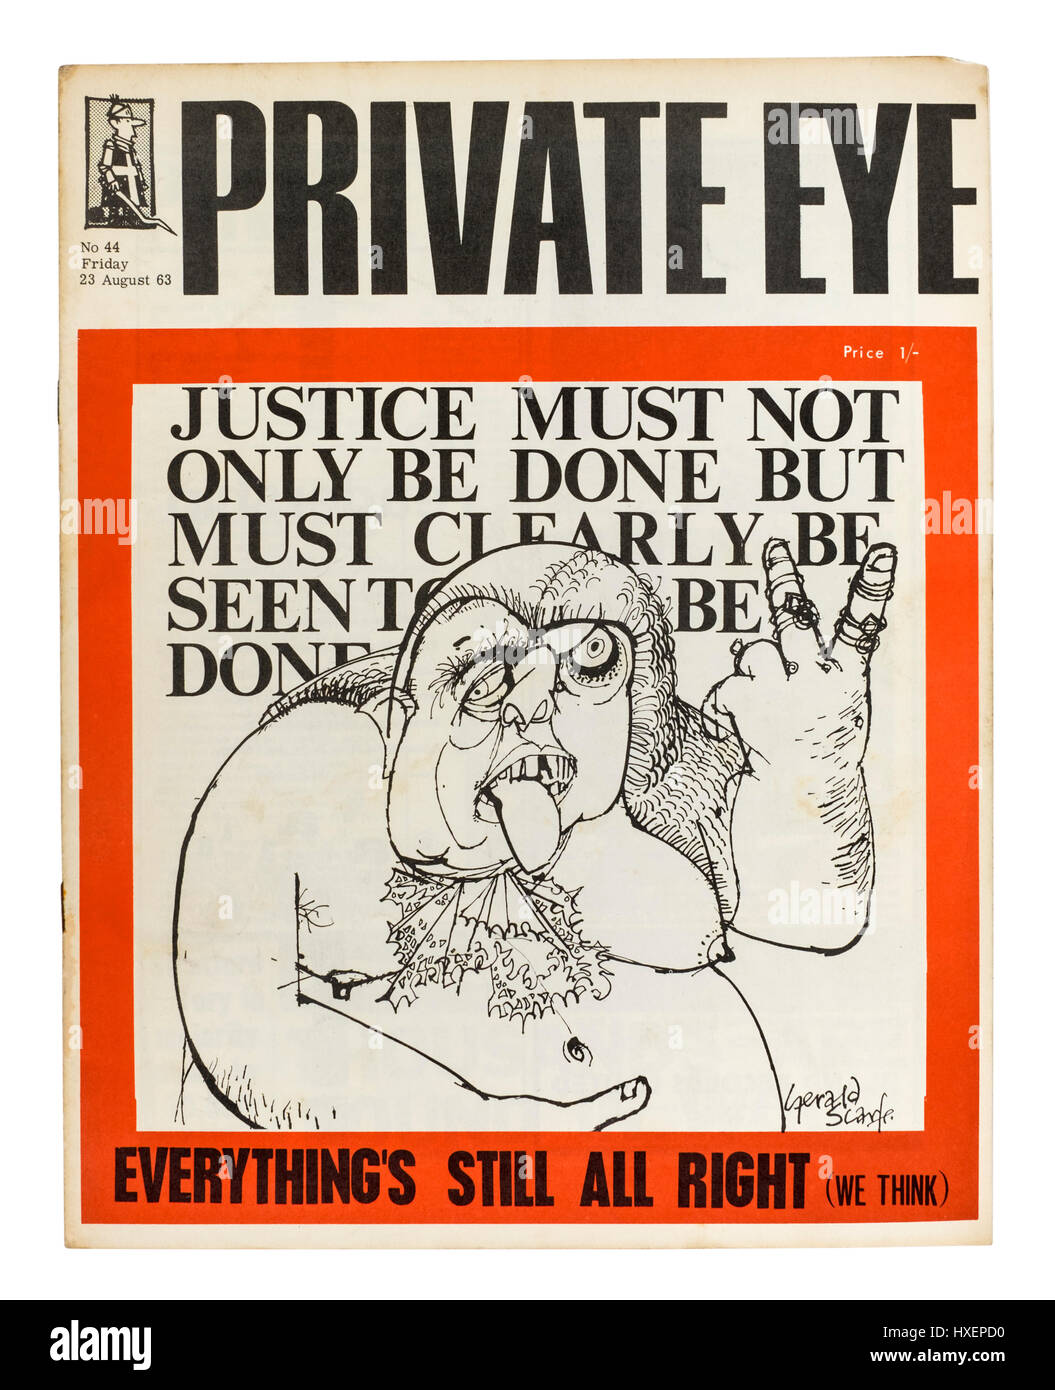 Inizio copia dell occhio privato Magazine (edizione n. 44 in data venerdì 23 agosto 1963) con Gerald Scarfe cartoon sul coperchio. Foto Stock